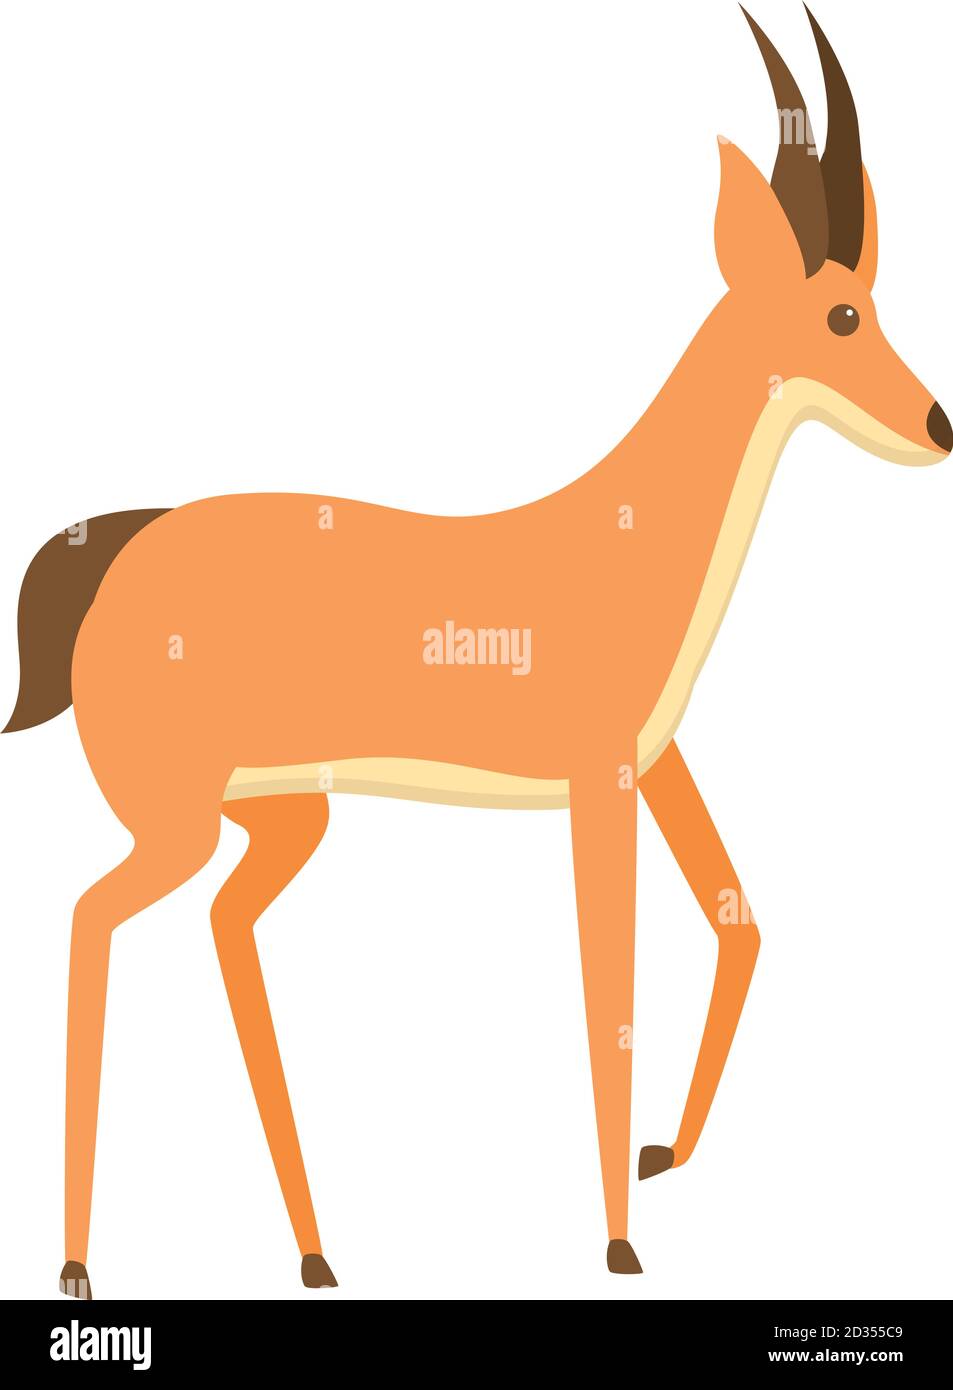 Icône de la gazelle Springbok. Dessin animé de l'icône représentant un vecteur gazelle de Springbok pour la conception de sites Web isolée sur fond blanc Illustration de Vecteur